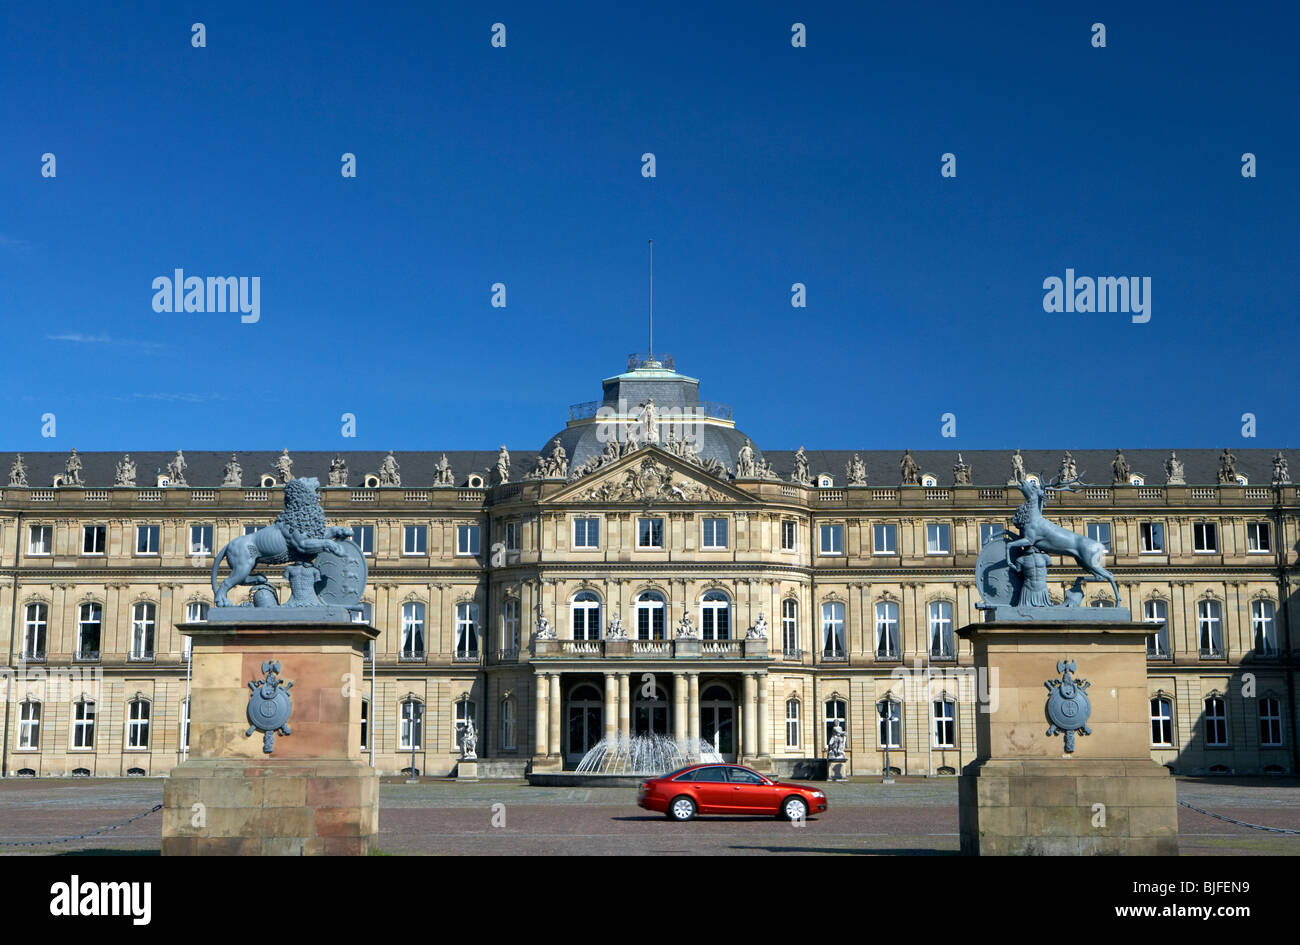 El nuevo castillo en Stuttgart, construido en 1746 en estilo barroco tardío, Alemania Foto de stock